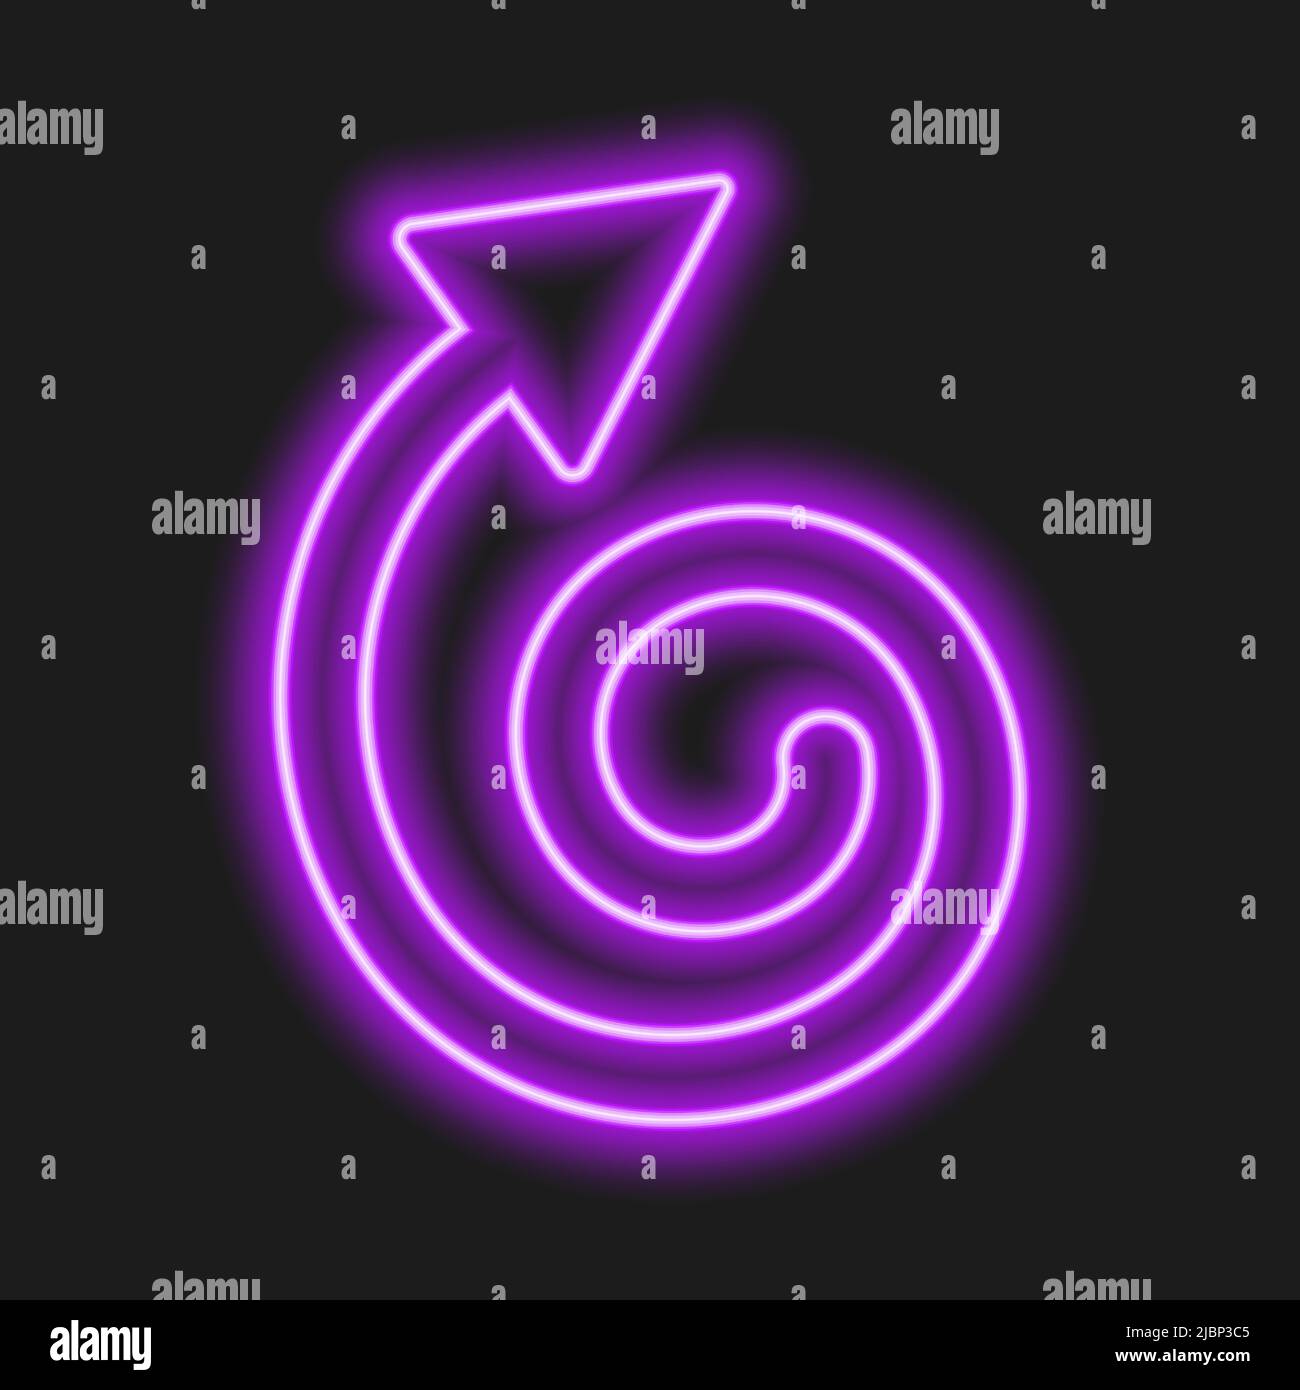 Flèche de répétition de néon violet brillant sur fond sombre. Symbole lumineux d'actualisation, de redémarrage, d'échange, de rotation. Illustration vectorielle réaliste. Illustration de Vecteur